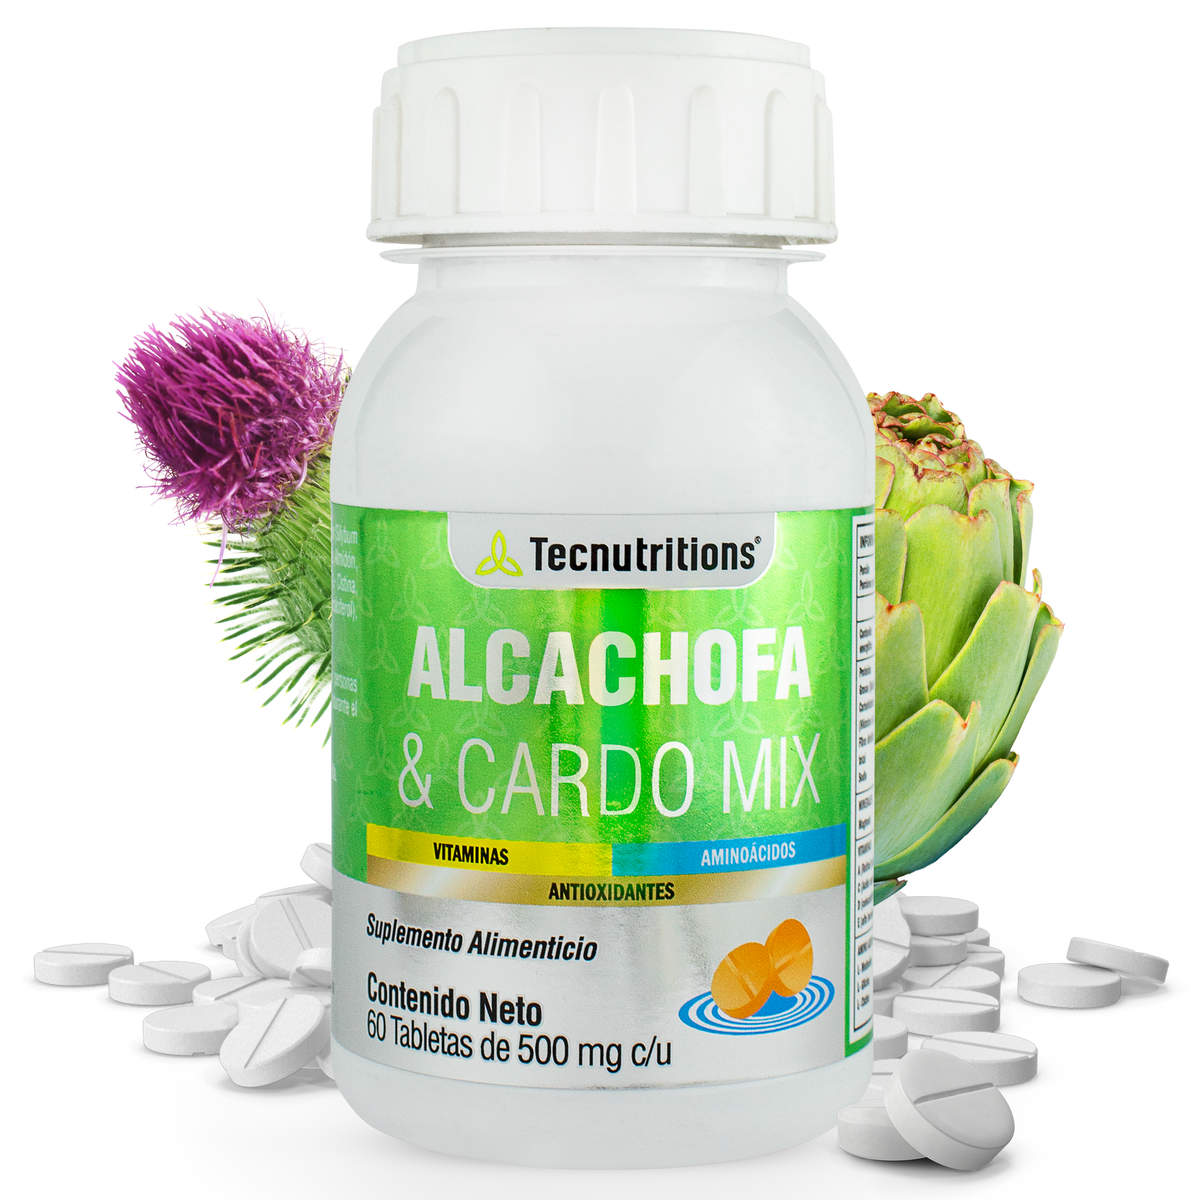 Suplemento alimenticio Alcachofa y Cardo Mix, 60 tabs, con cardo mariano, alcachofa, detox